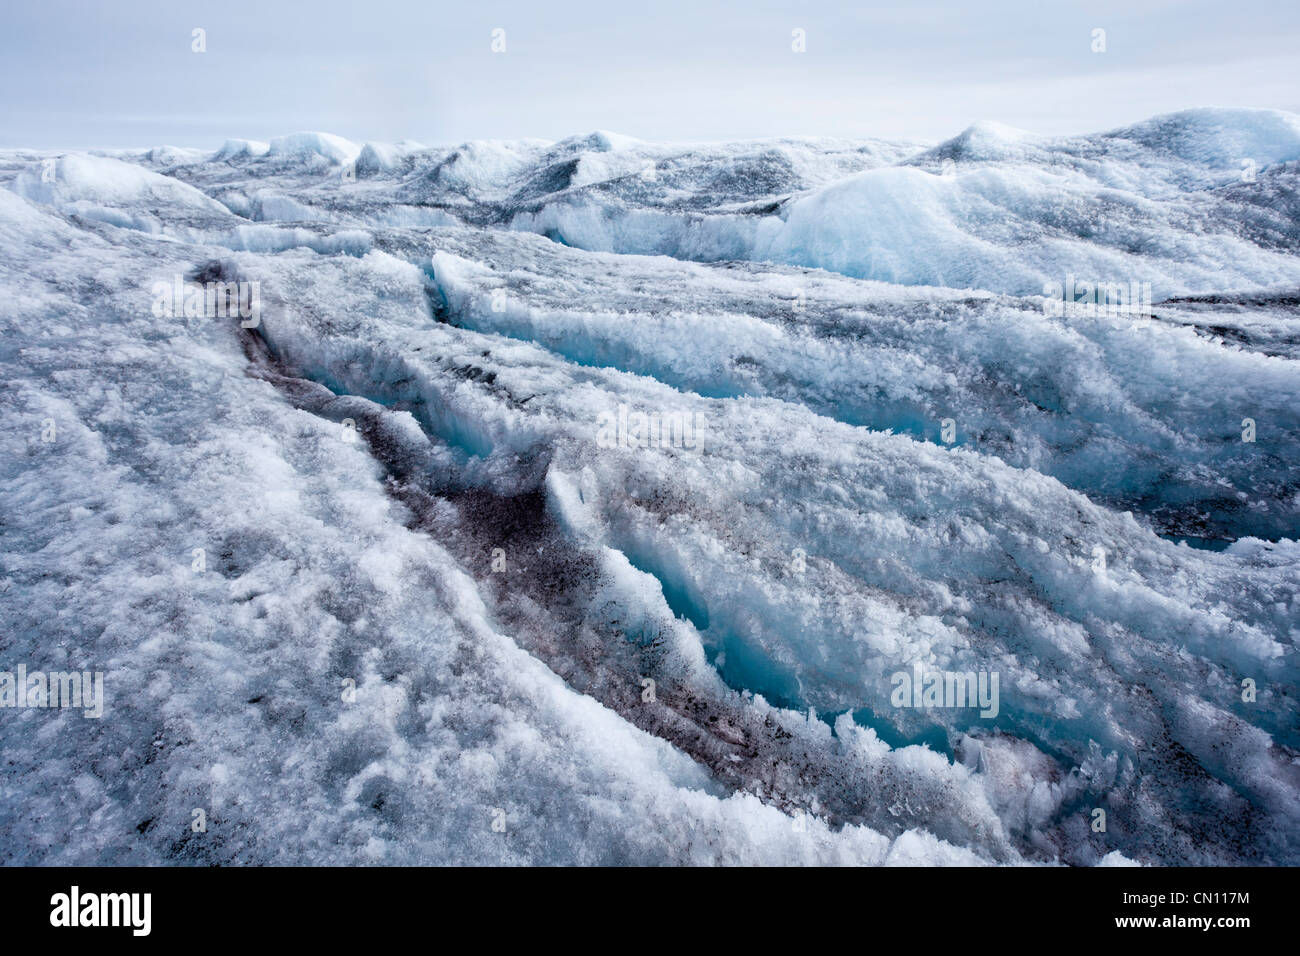 La tundra ártica - Capa de hielo de Groenlandia glaciar crevassed ver Foto de stock